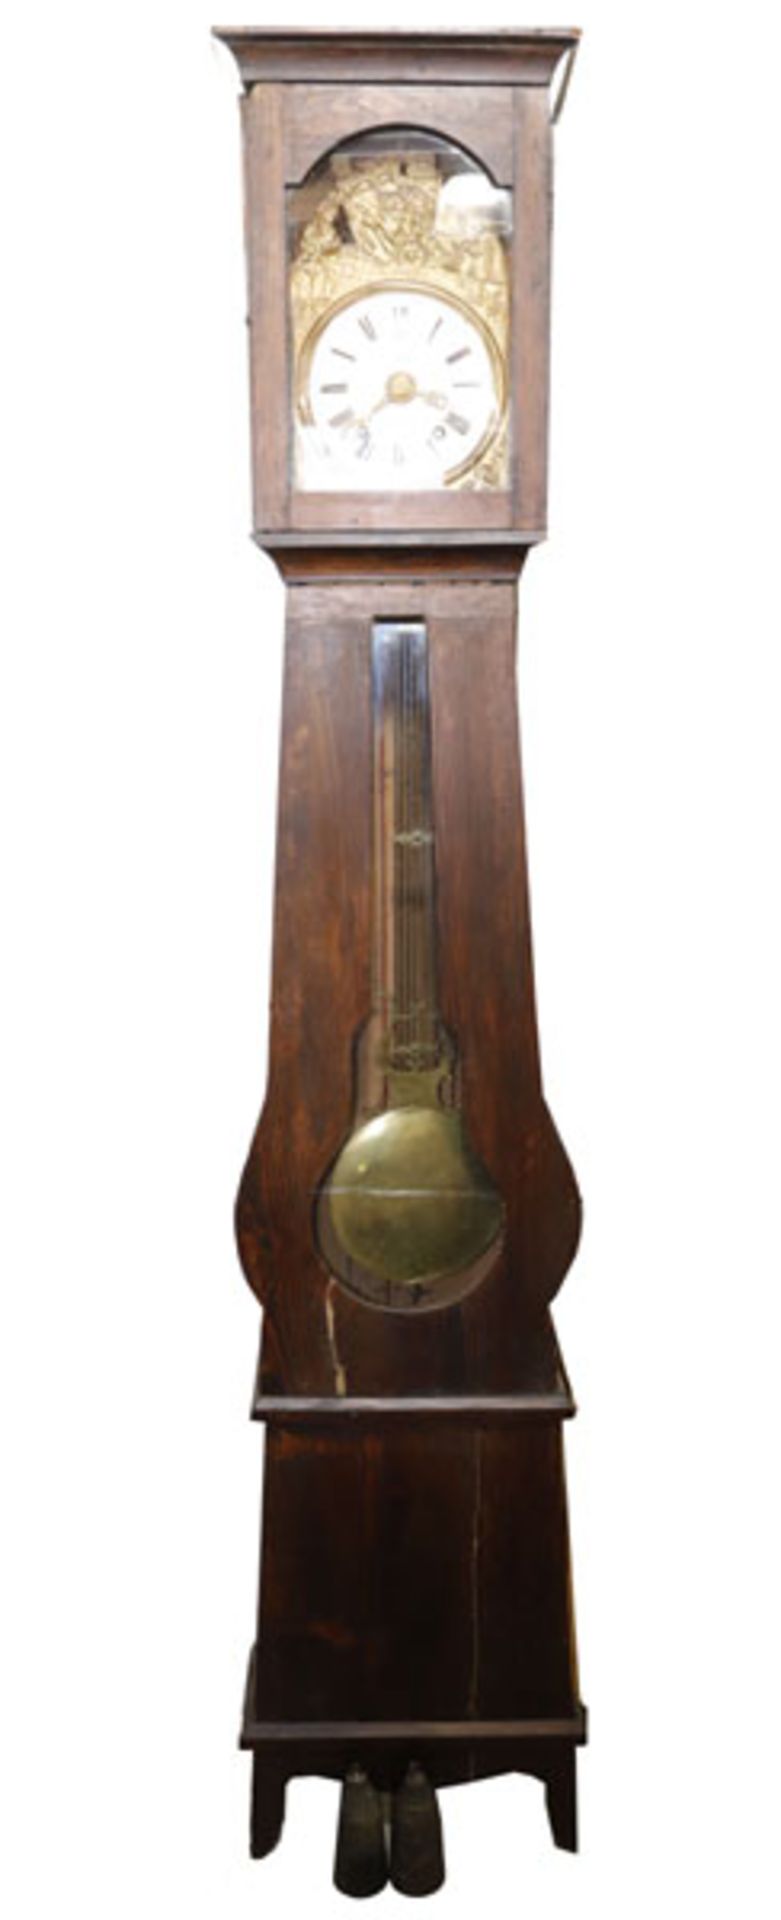 Comtoise Standuhr, früh 19. Jahrhundert, komplett, Holzgehäuse teils verglast, Emailzifferblatt